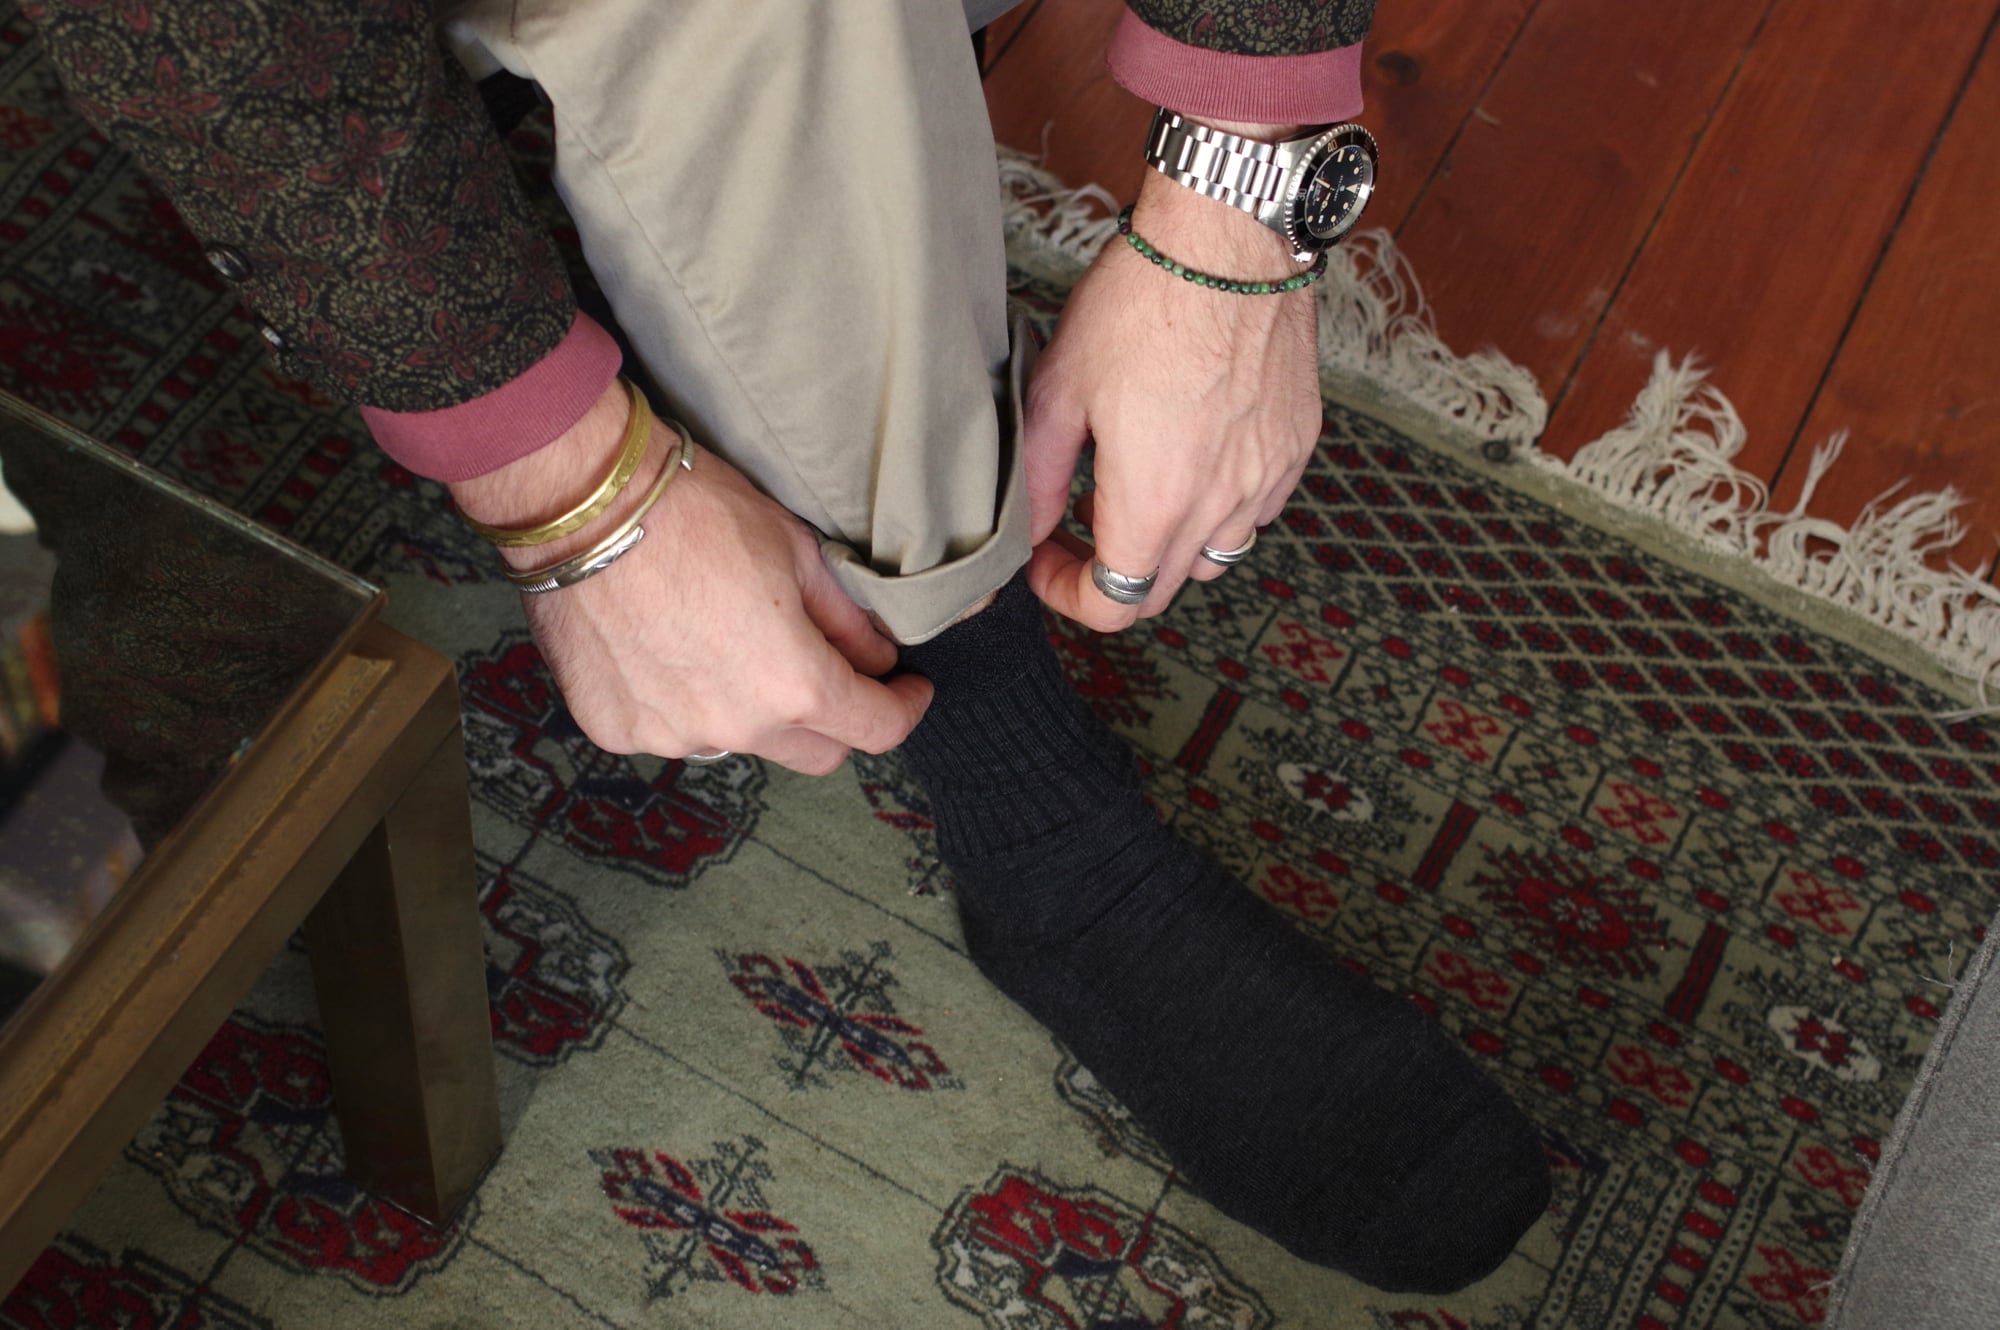 comment choisir des chausettes en laine mérinos les meilleures sympa bonnard equitable et faite en suisse 